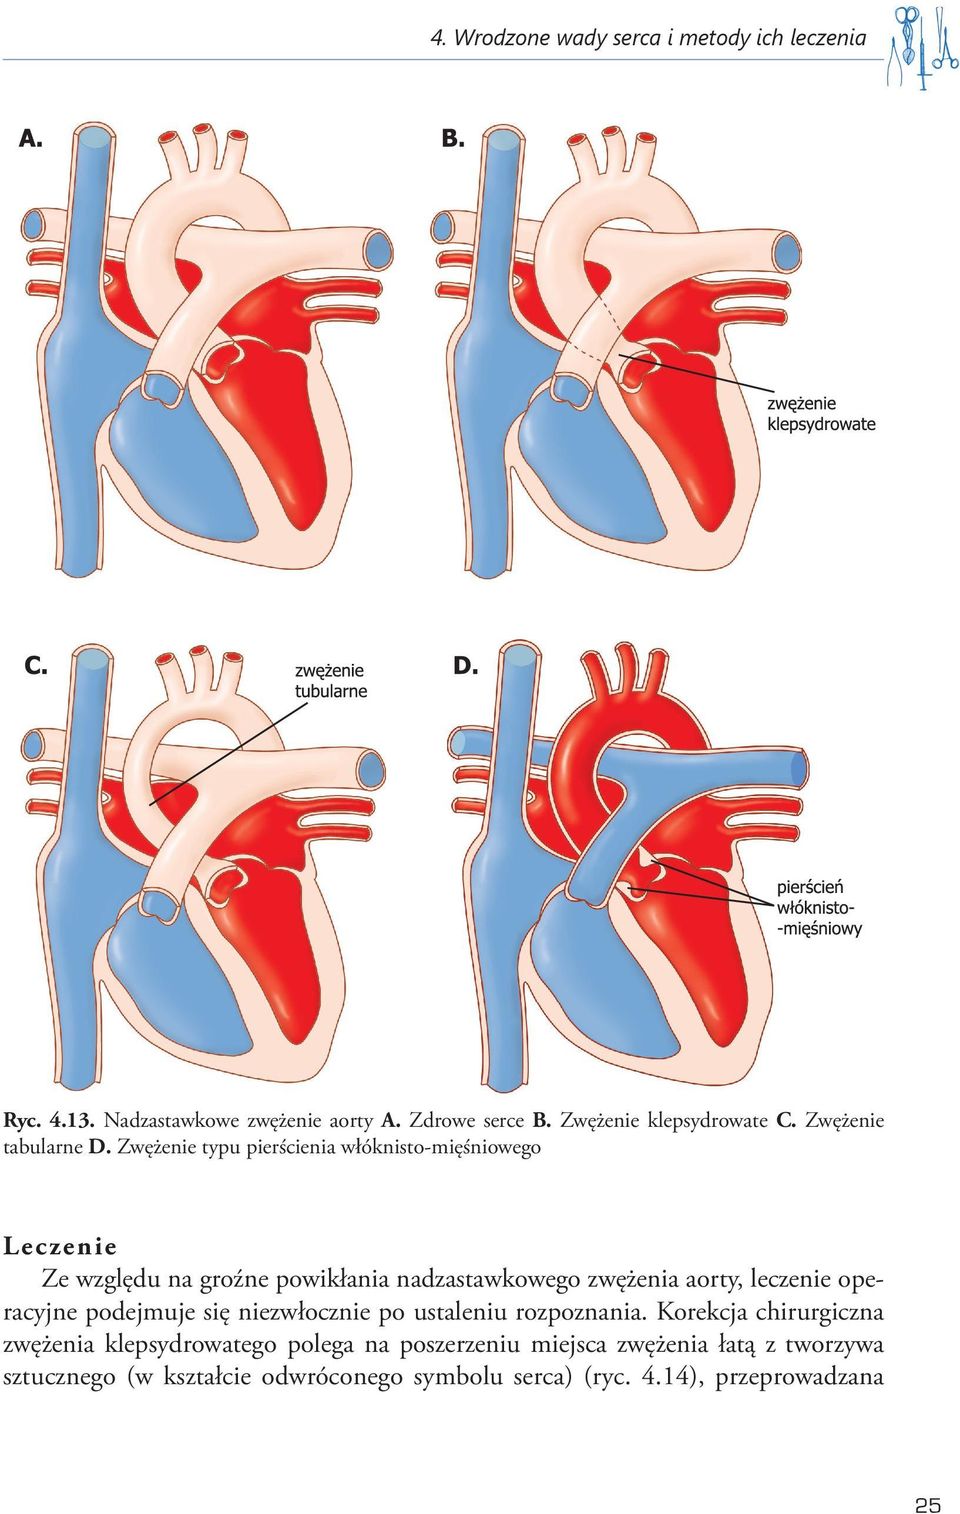 Zwężenie typu pierścienia włóknisto-mięśniowego Lec zen ie Ze względu na groźne powikłania nadzastawkowego zwężenia aorty, leczenie